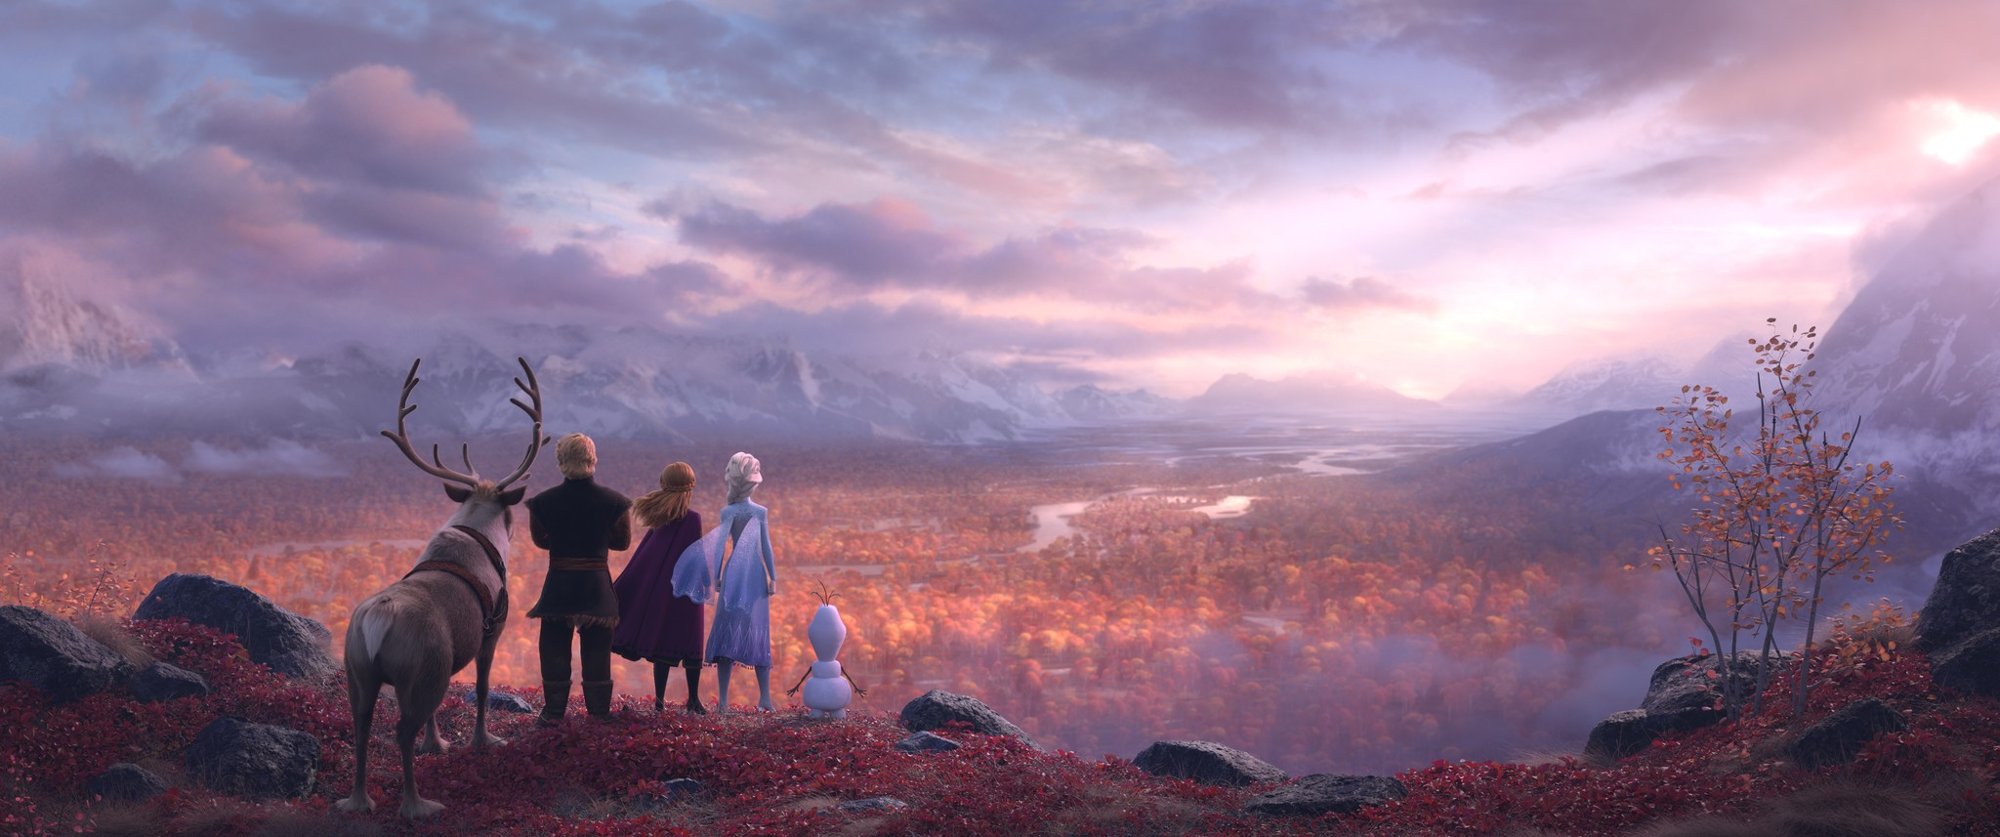 A scene from Walt Disney Pictures' Frozen II (2019)